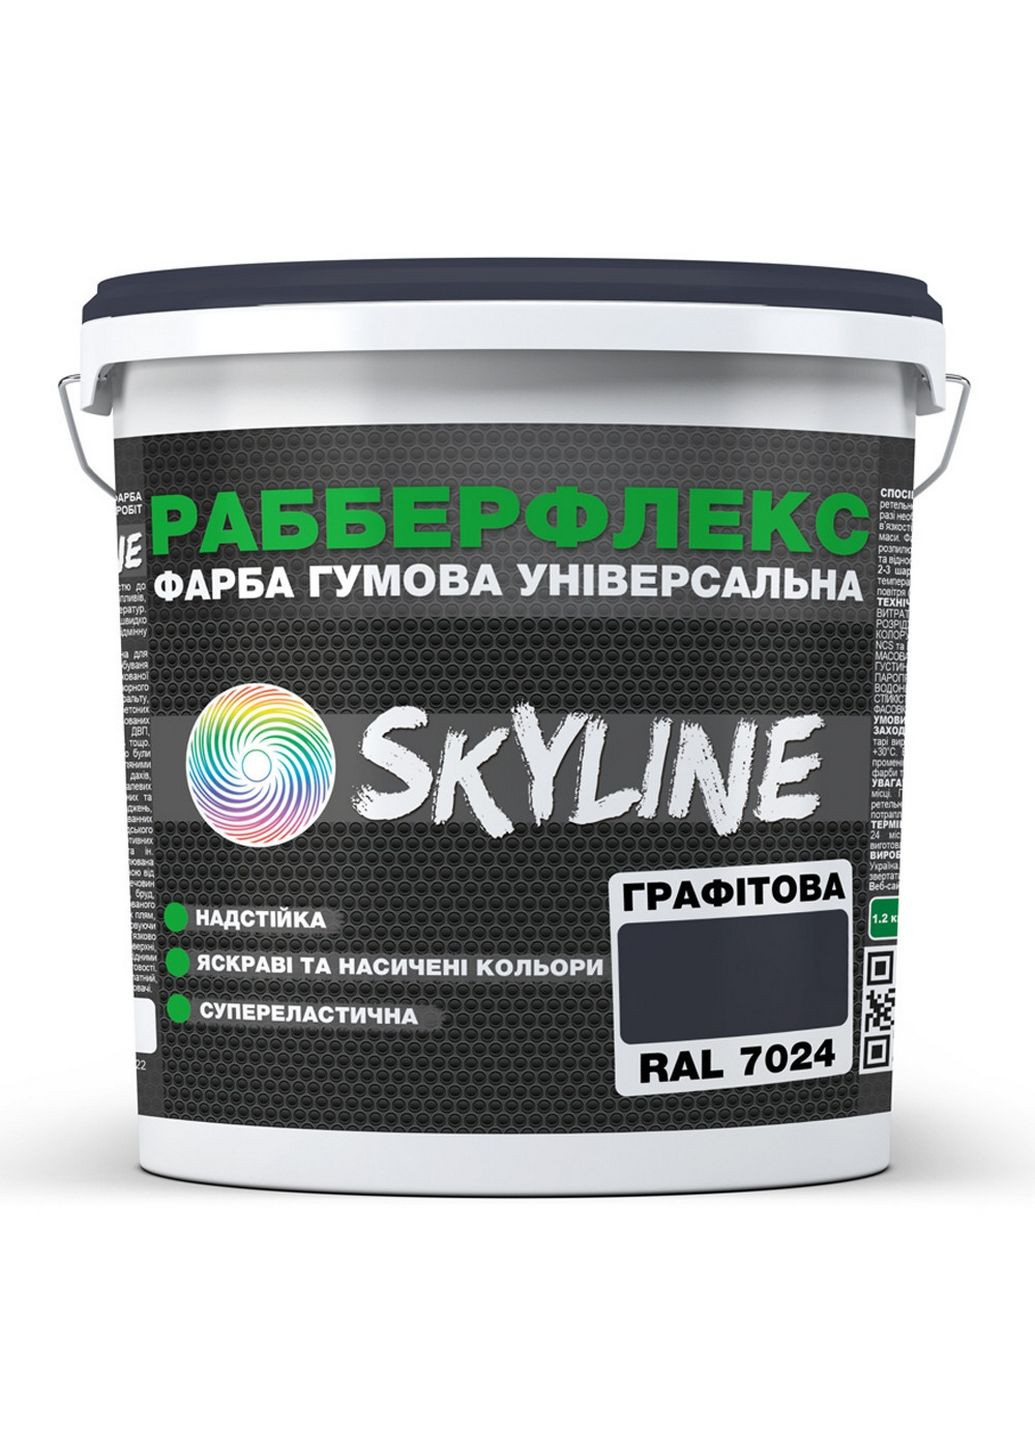 Надстійка фарба гумова супереластична «РабберФлекс» 12 кг SkyLine (289368618)